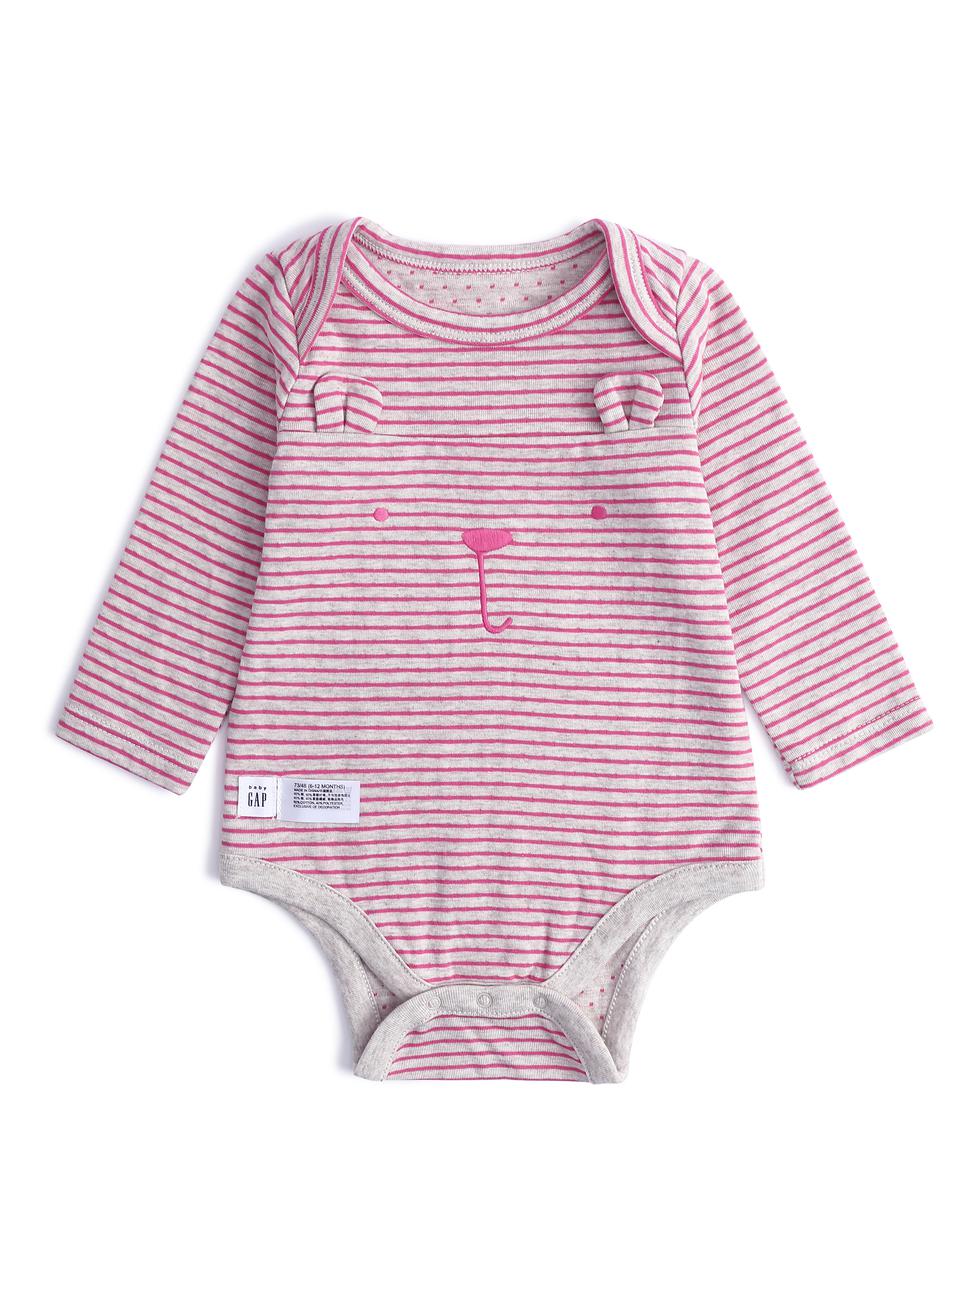 嬰兒裝|時尚條紋小熊造型長袖包屁衣-粉色條紋